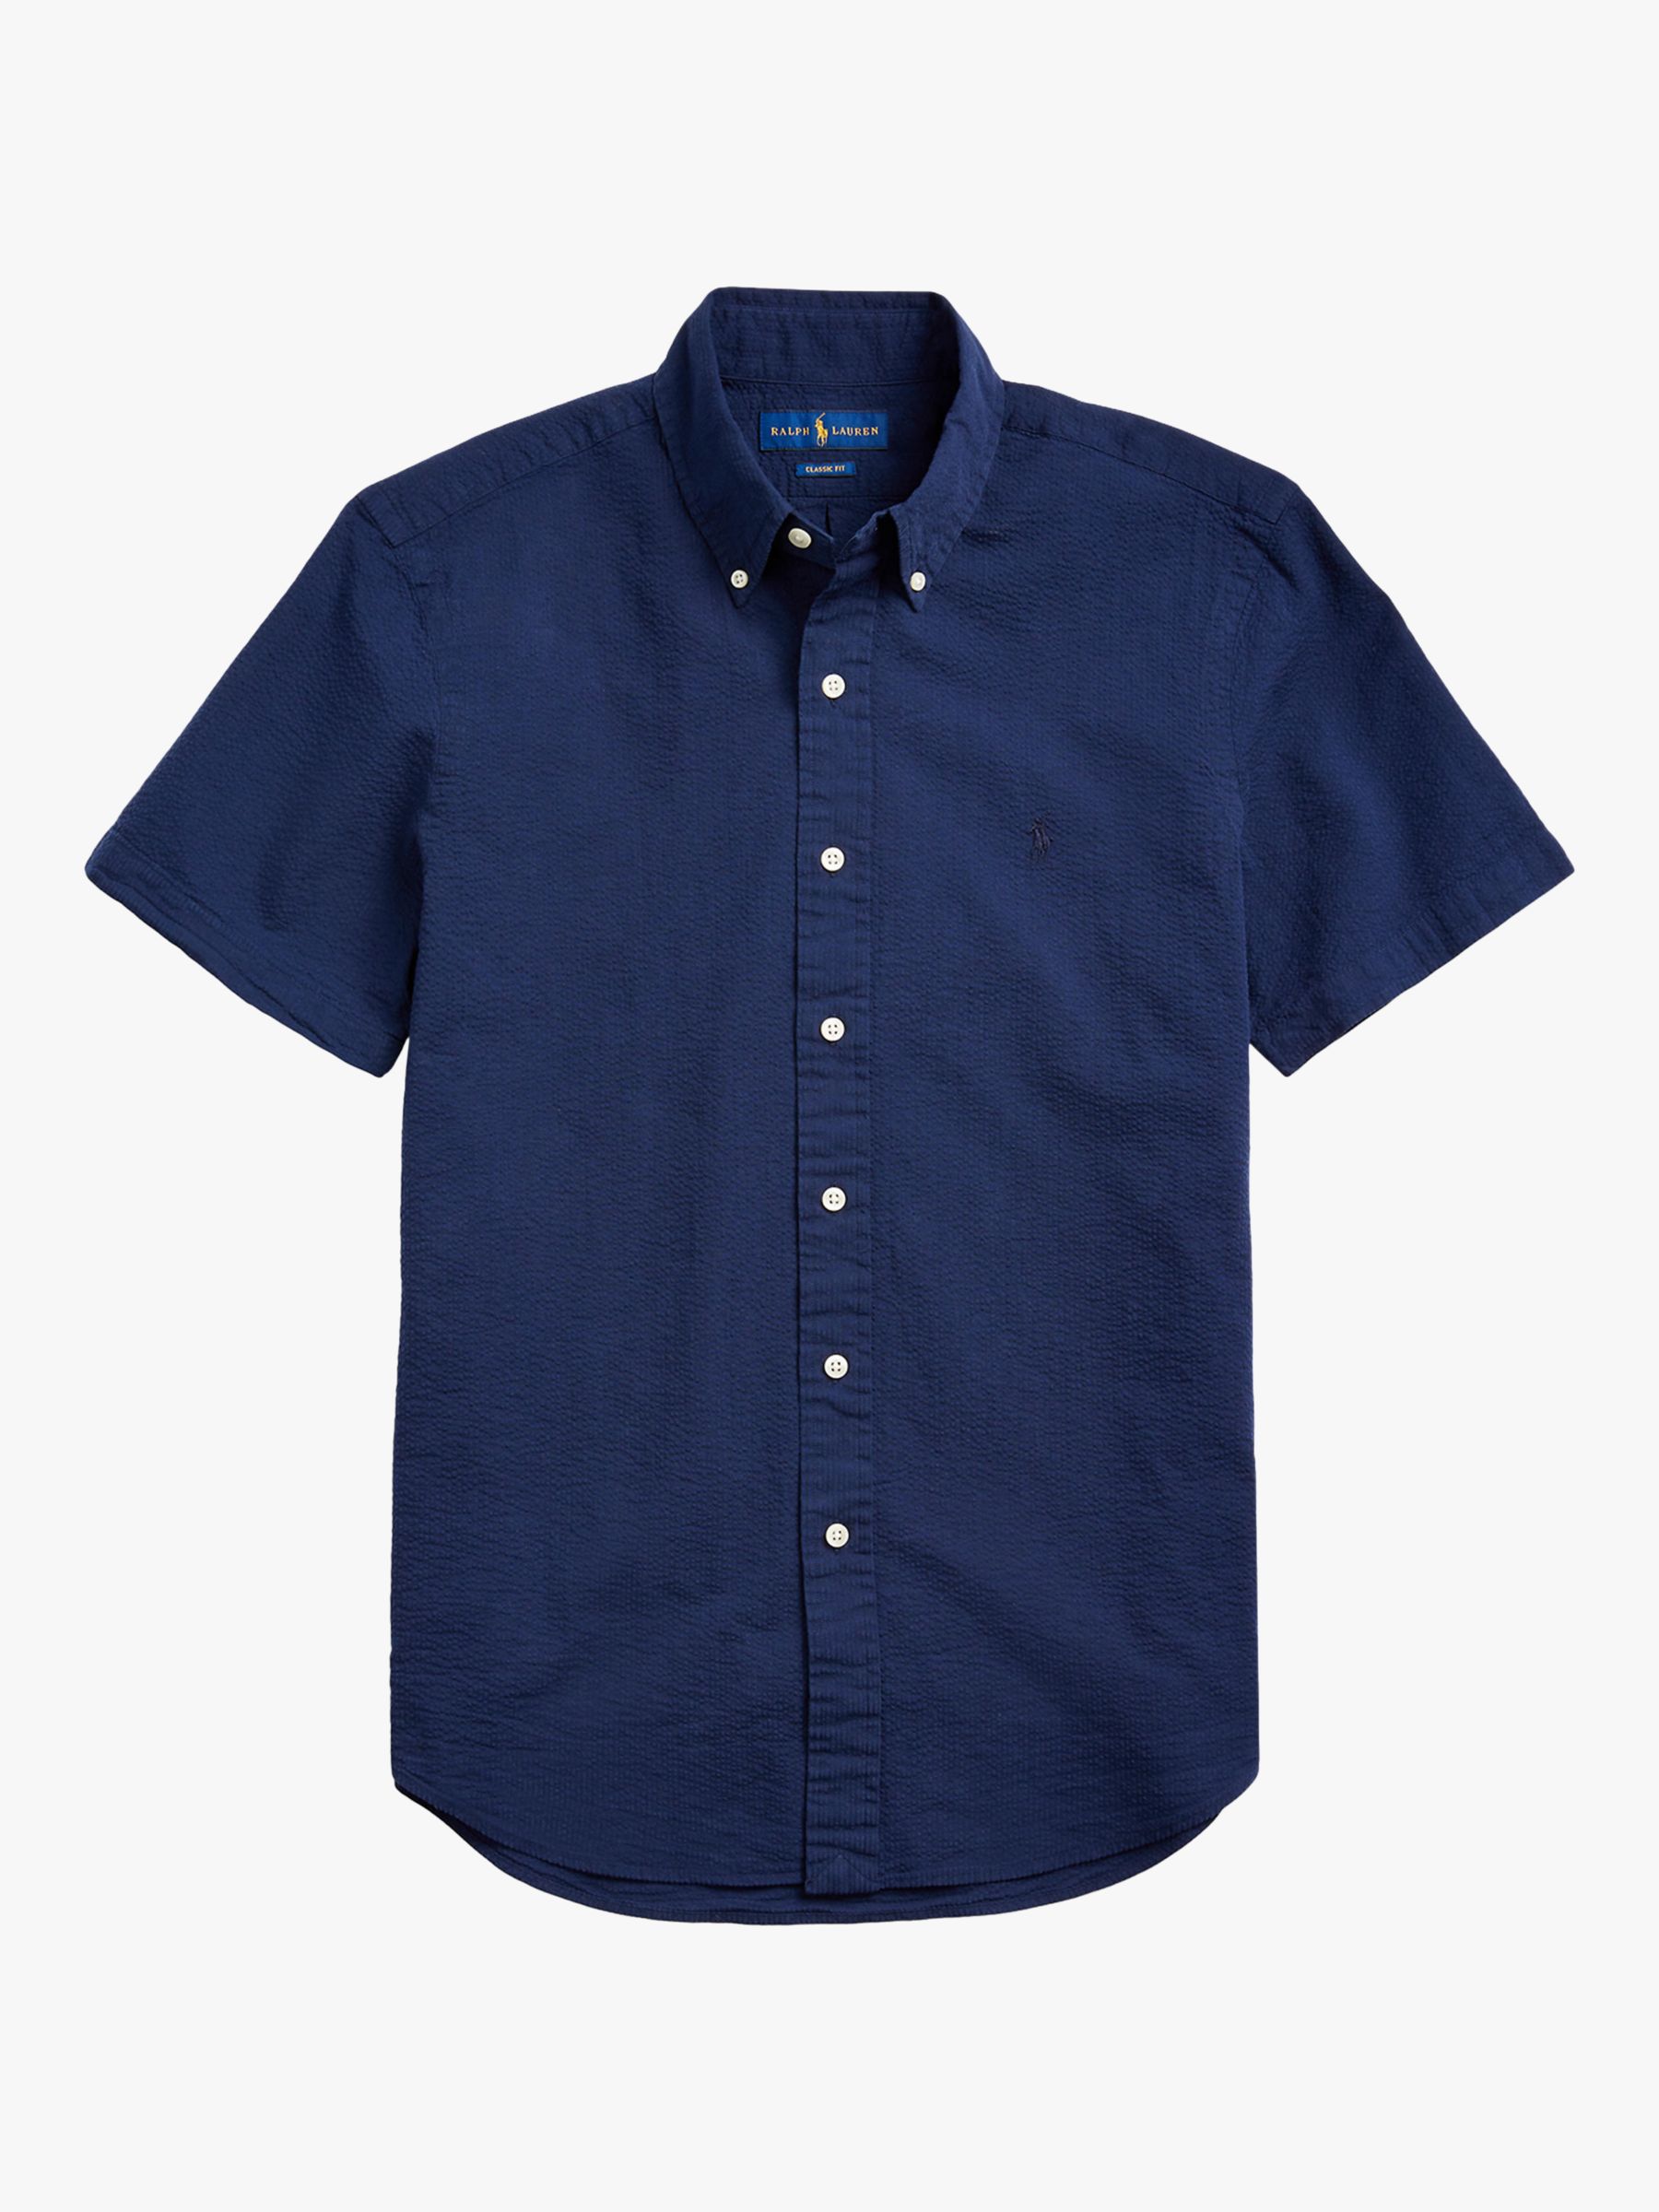 Polo Ralph Lauren Short Sleeve Linen Shirt, Astoria Navy